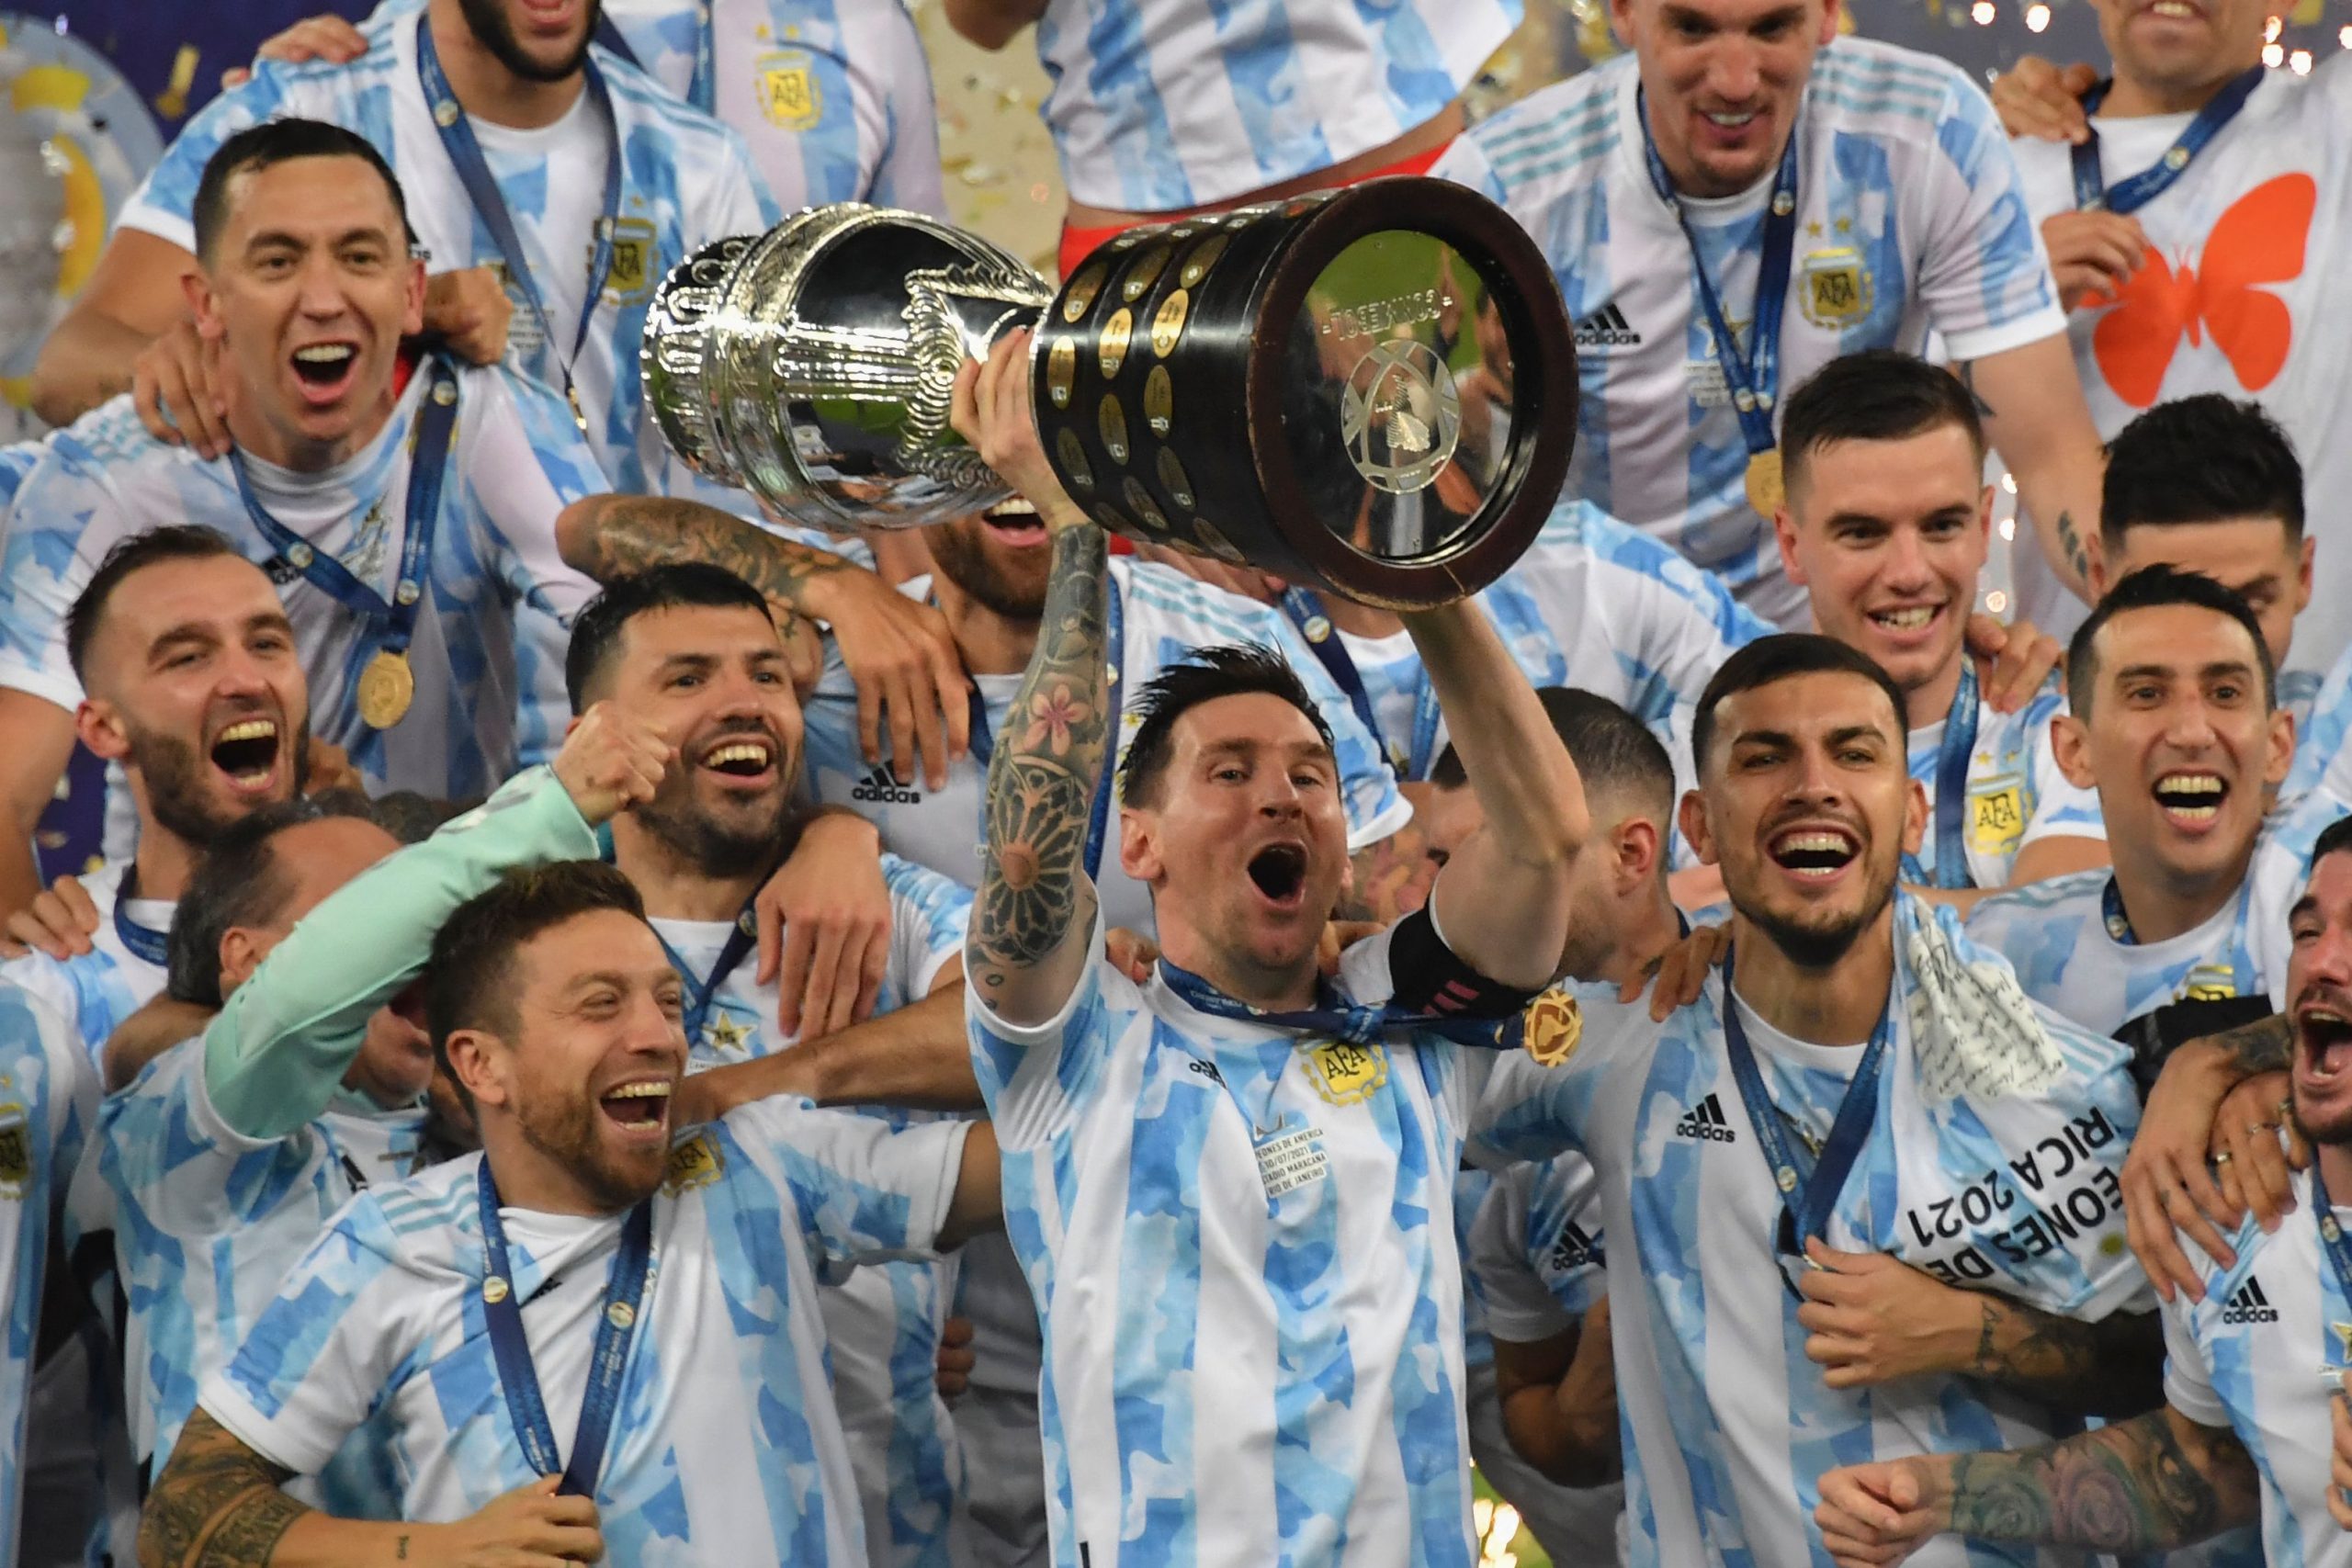 ميسي يقود الأرجنتين للفوز بكوبا أمريكا.. وإيطاليا تعود لمنصات التتويج بعد فوزها باليورو